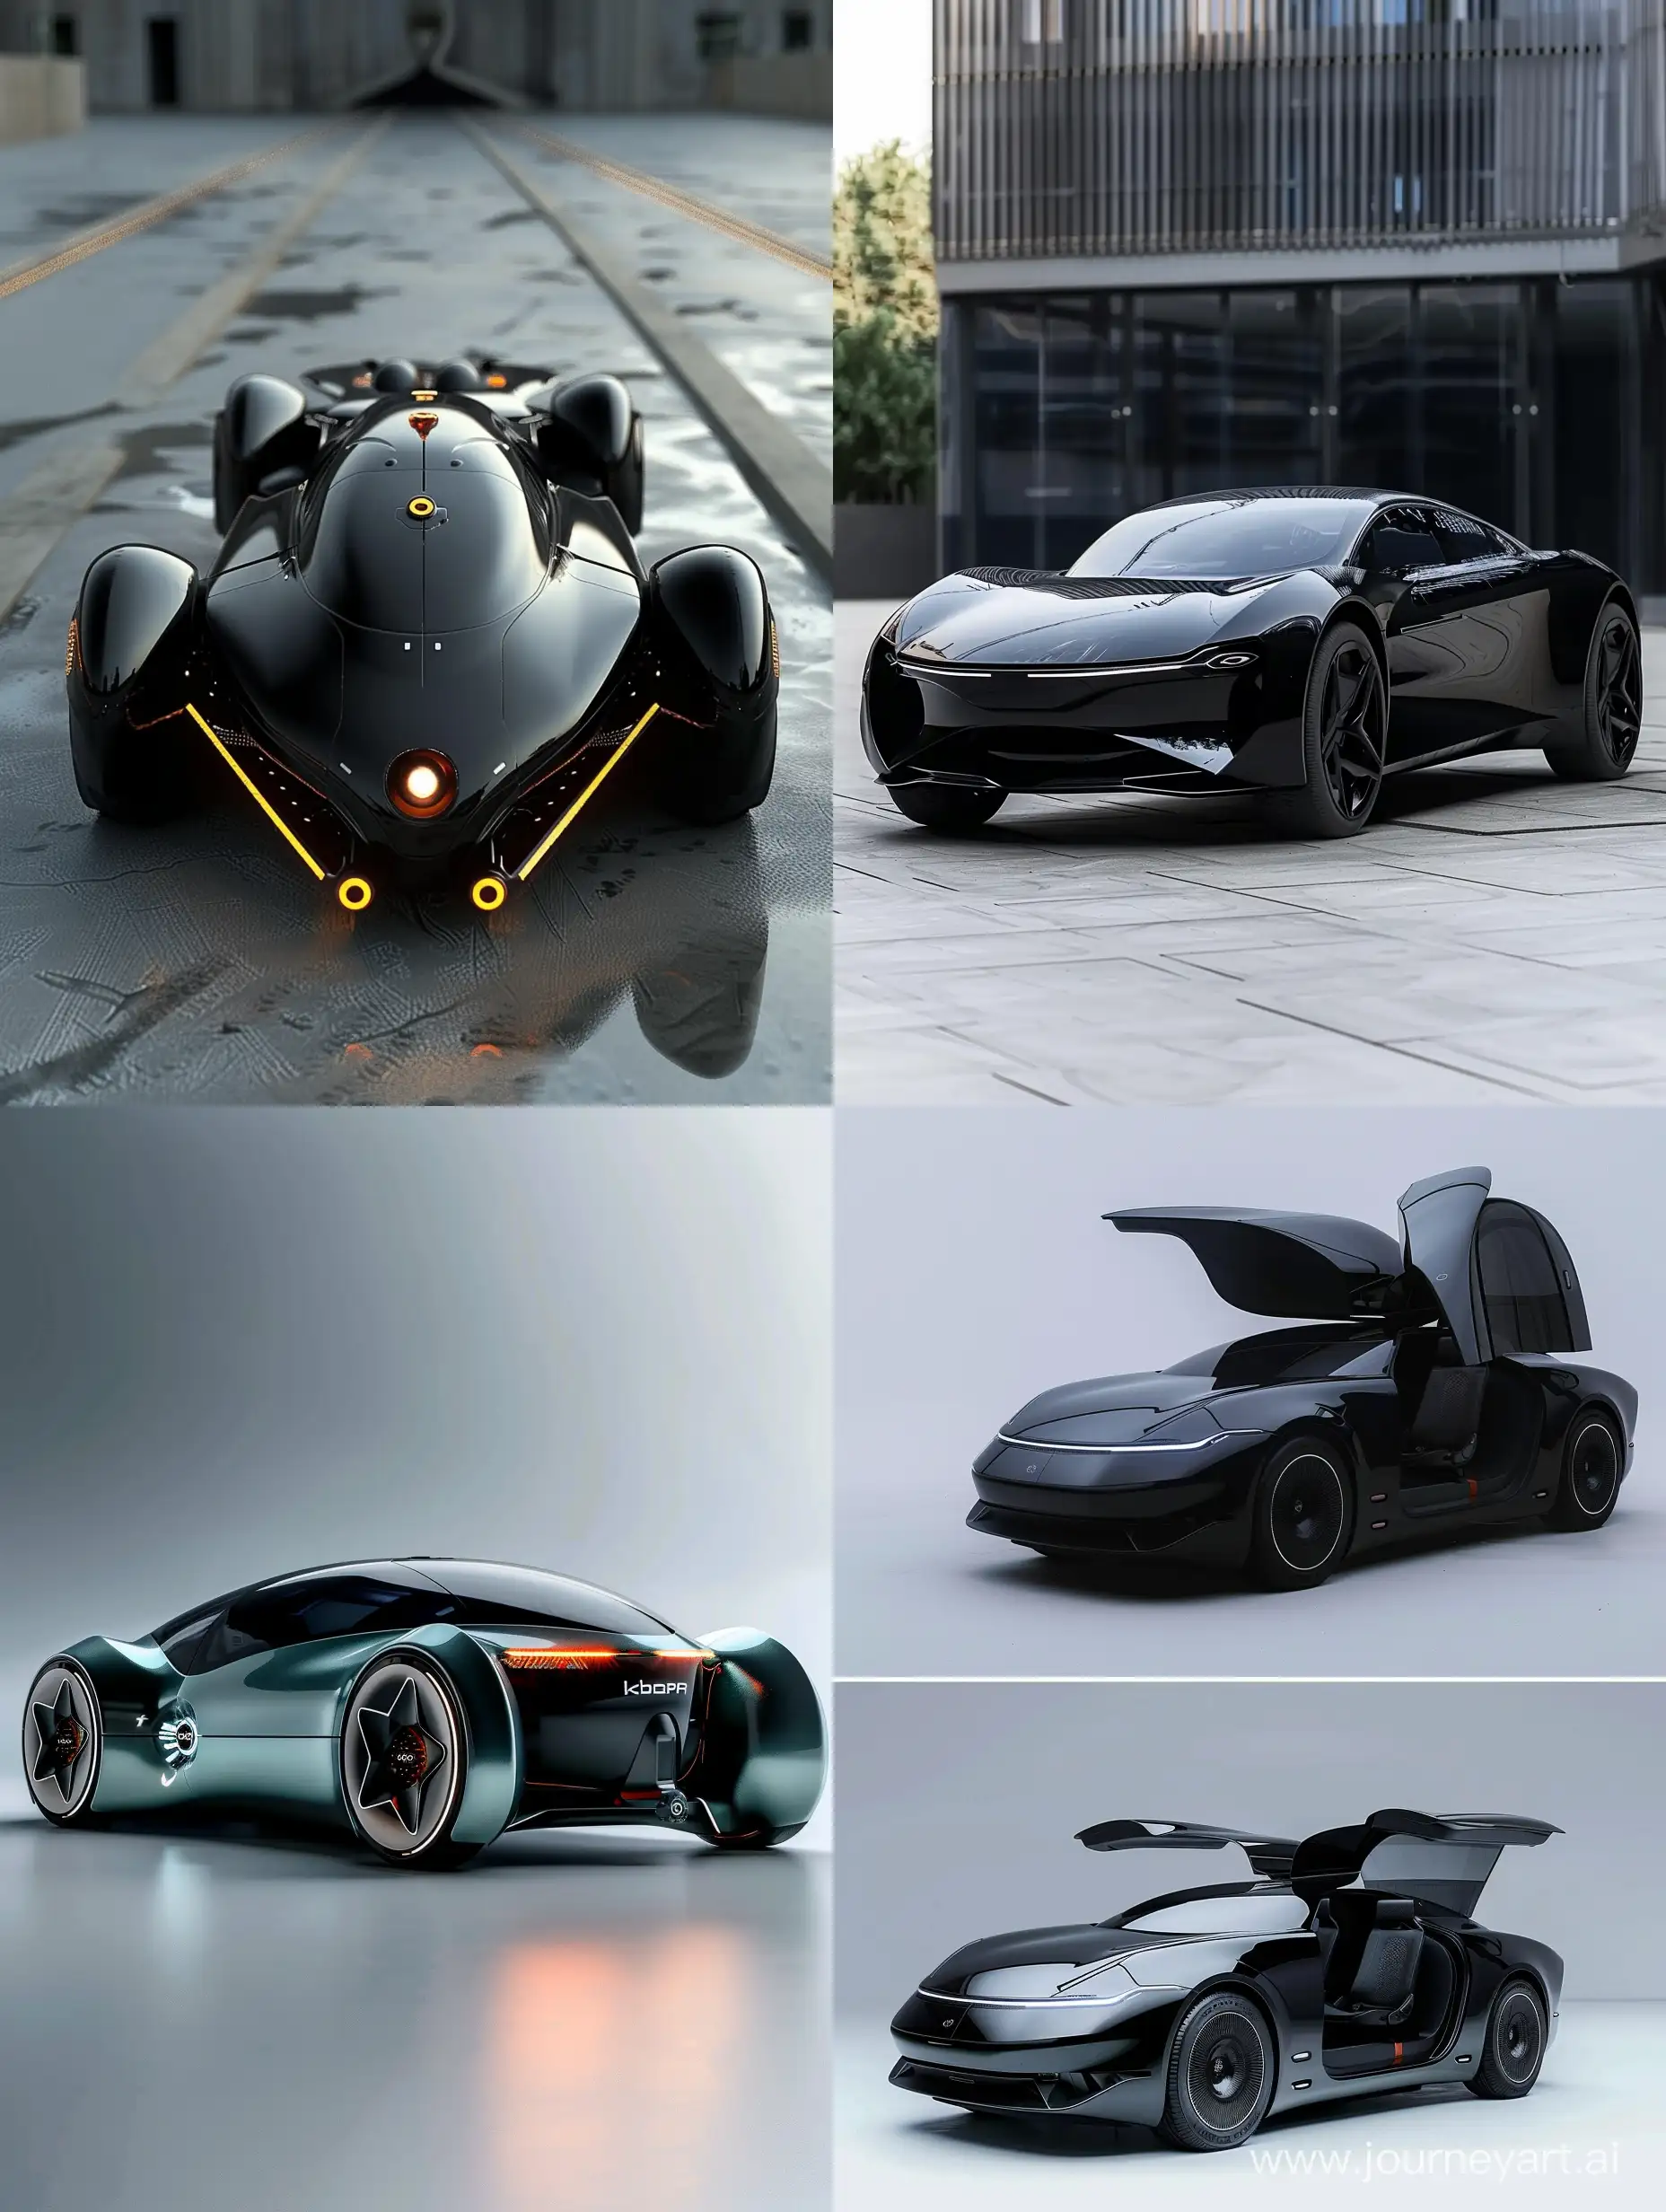 Futuristic-Iran-Khodro-Car-Designs-in-2050